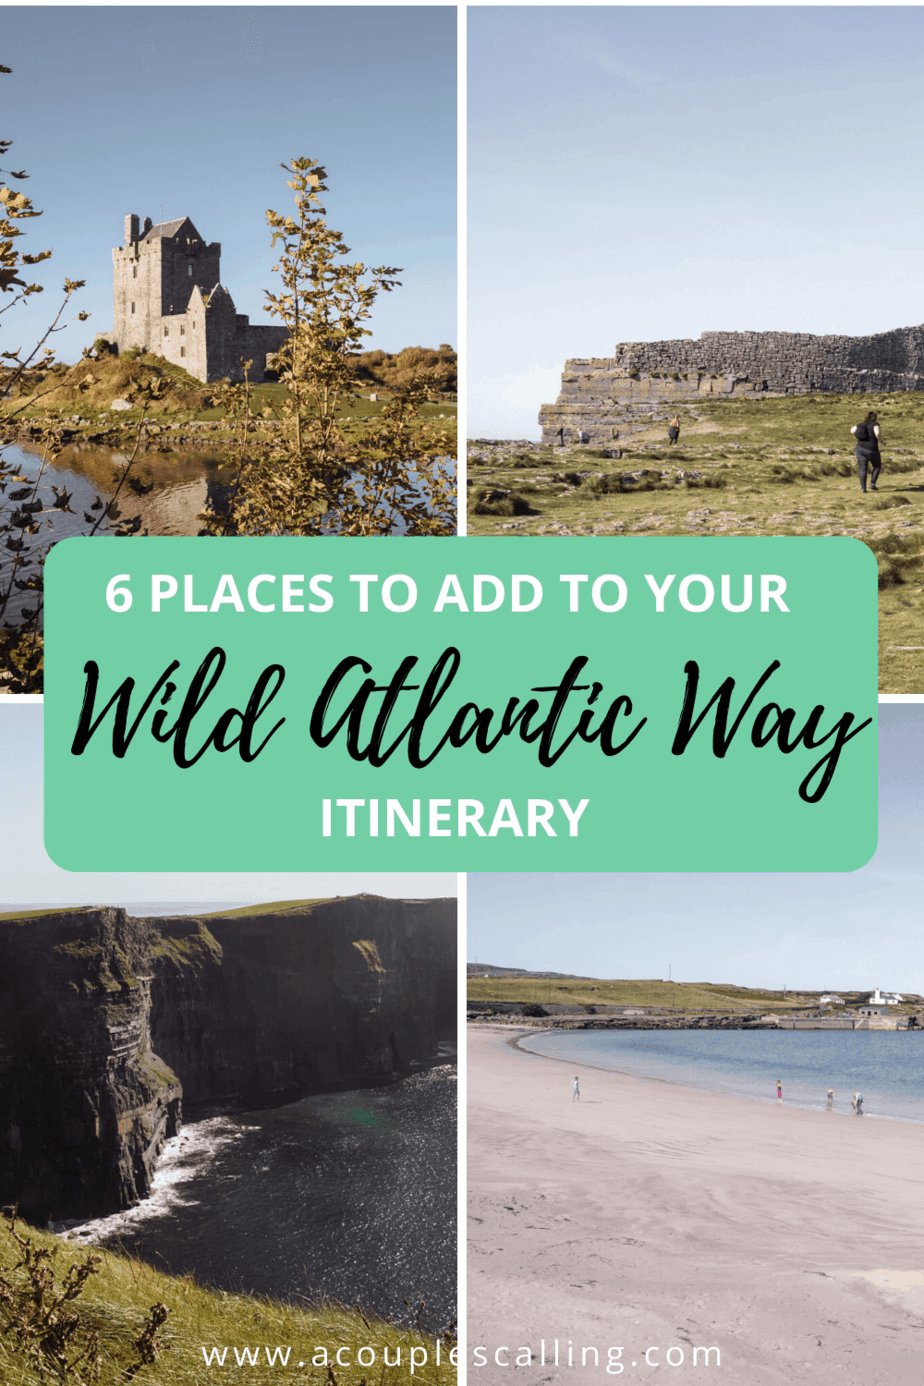 Wild Atlantic Way itinerary